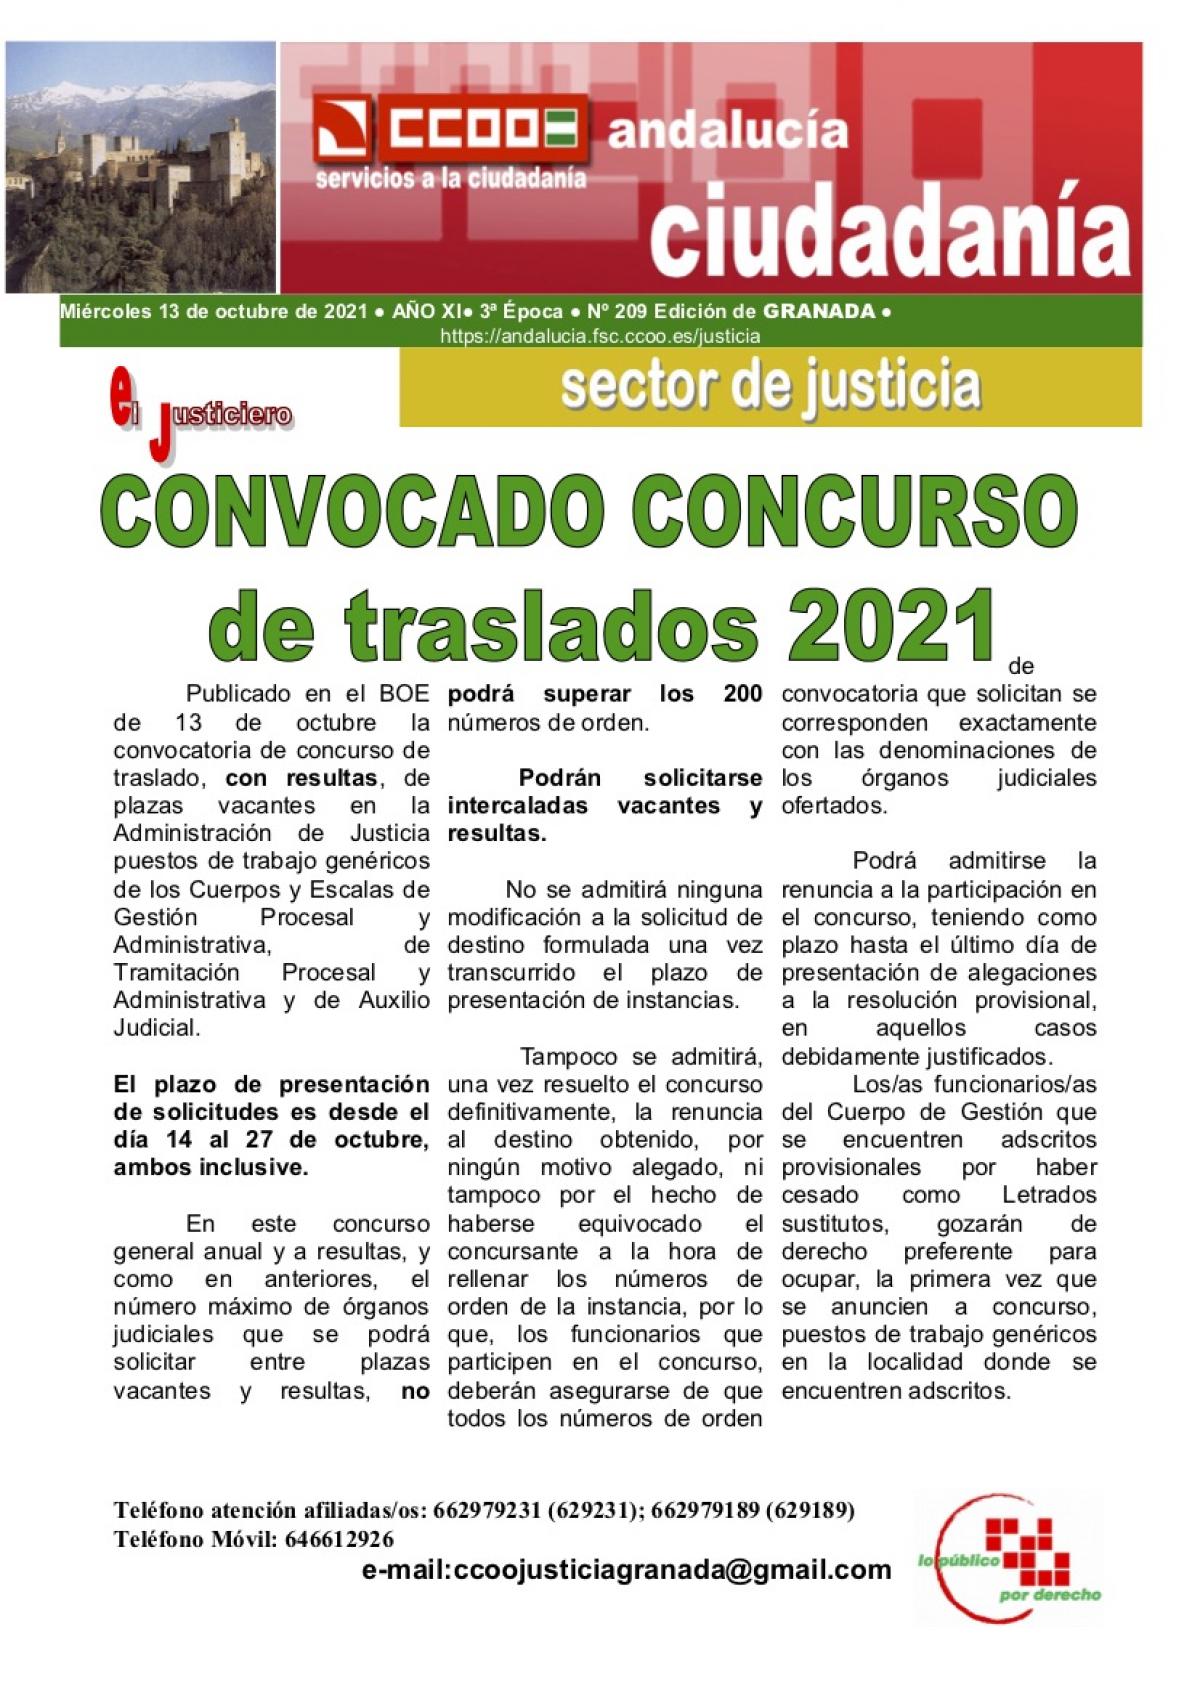 El Justiciero concursos de traslados 2021 Granada